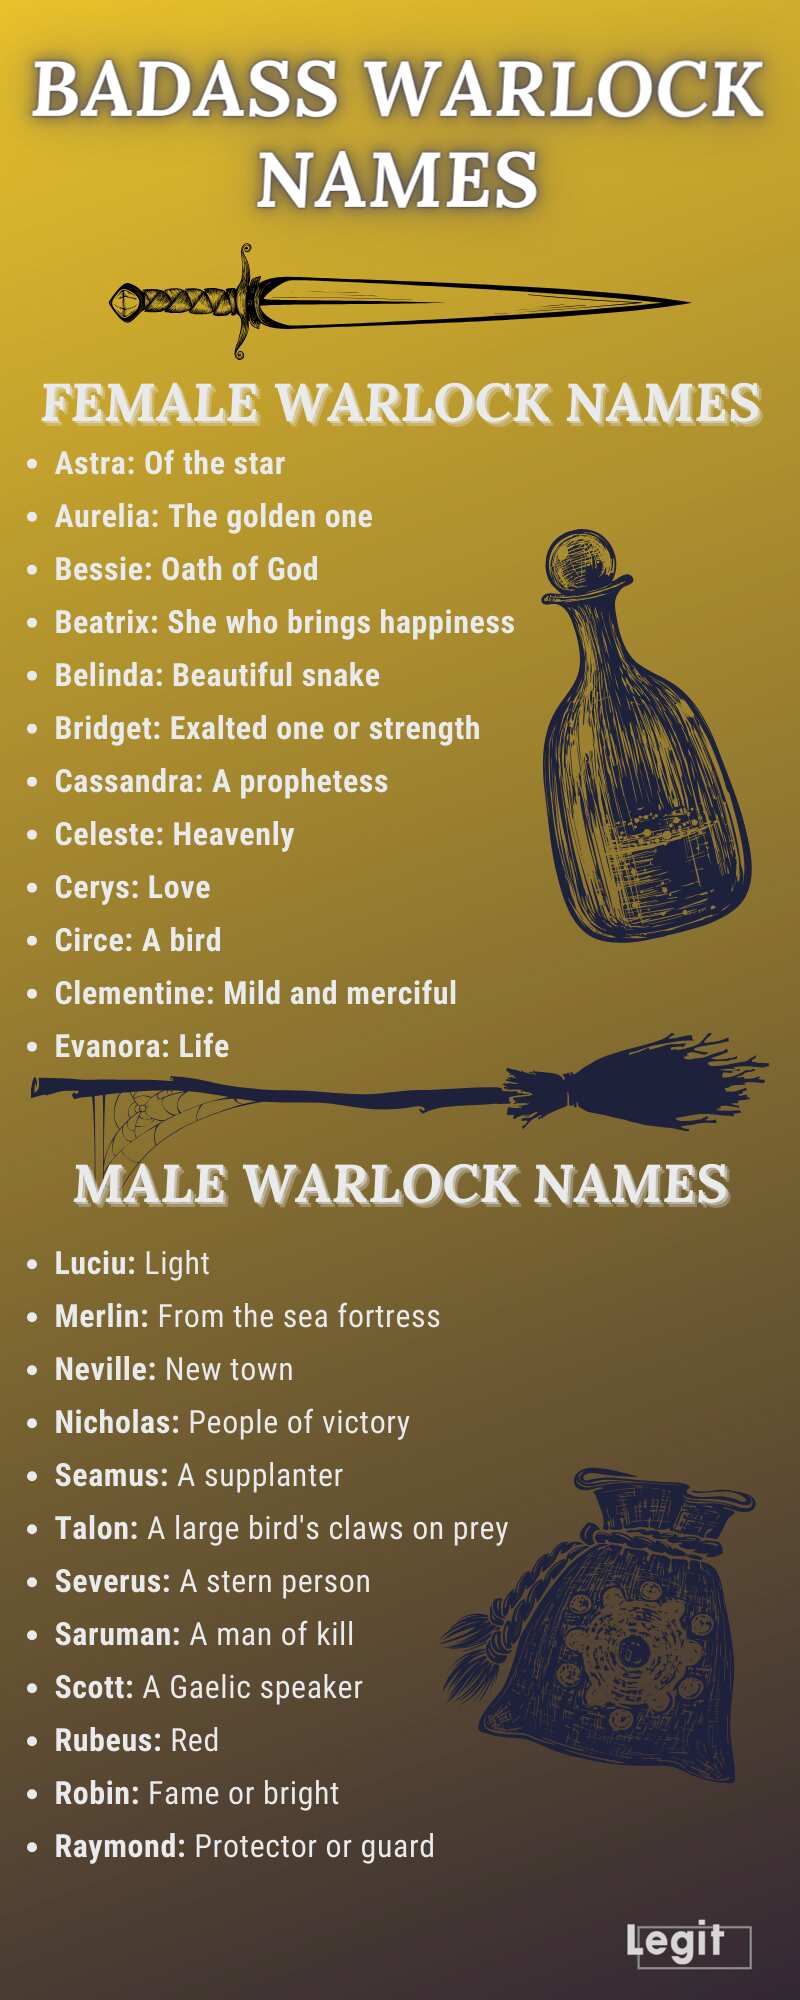 Badass male and female warlock names